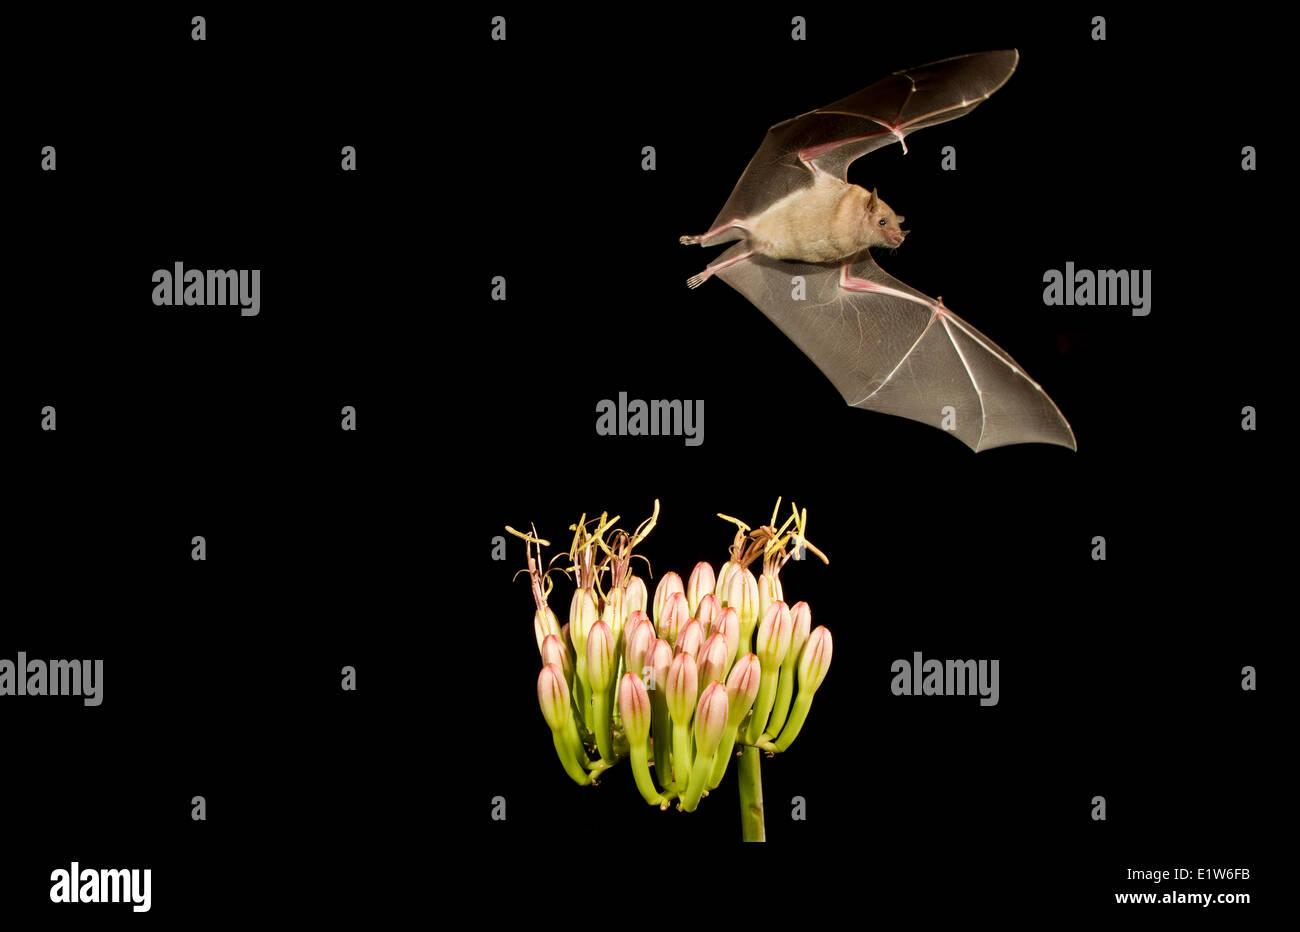 Bec long moindre Leptonycteris yerbabuenae (bat), se nourrissant de fleur d'Agave, Amado, Arizona. Cette chauve-souris est classé vulnérable. Banque D'Images